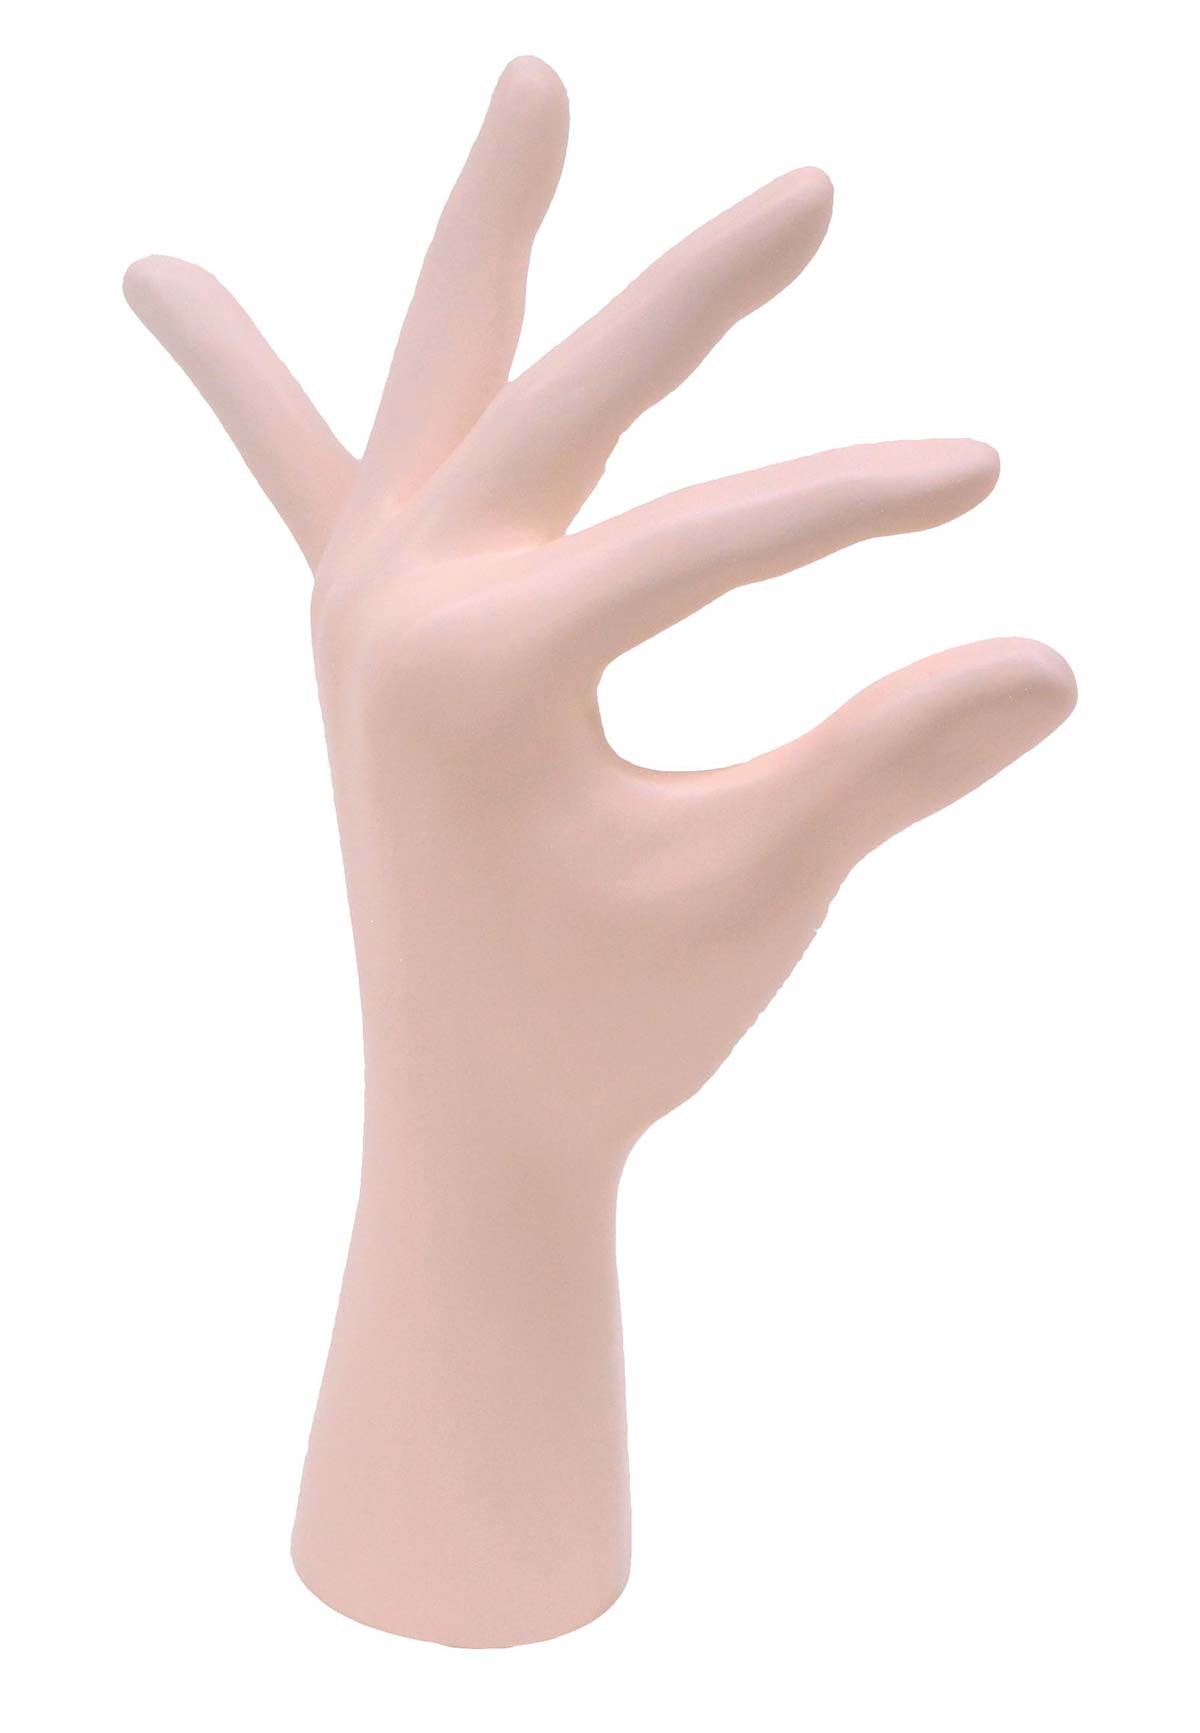 Röntgen-Teilphantom mit künstlichen Knochen - Linke Hand, opak